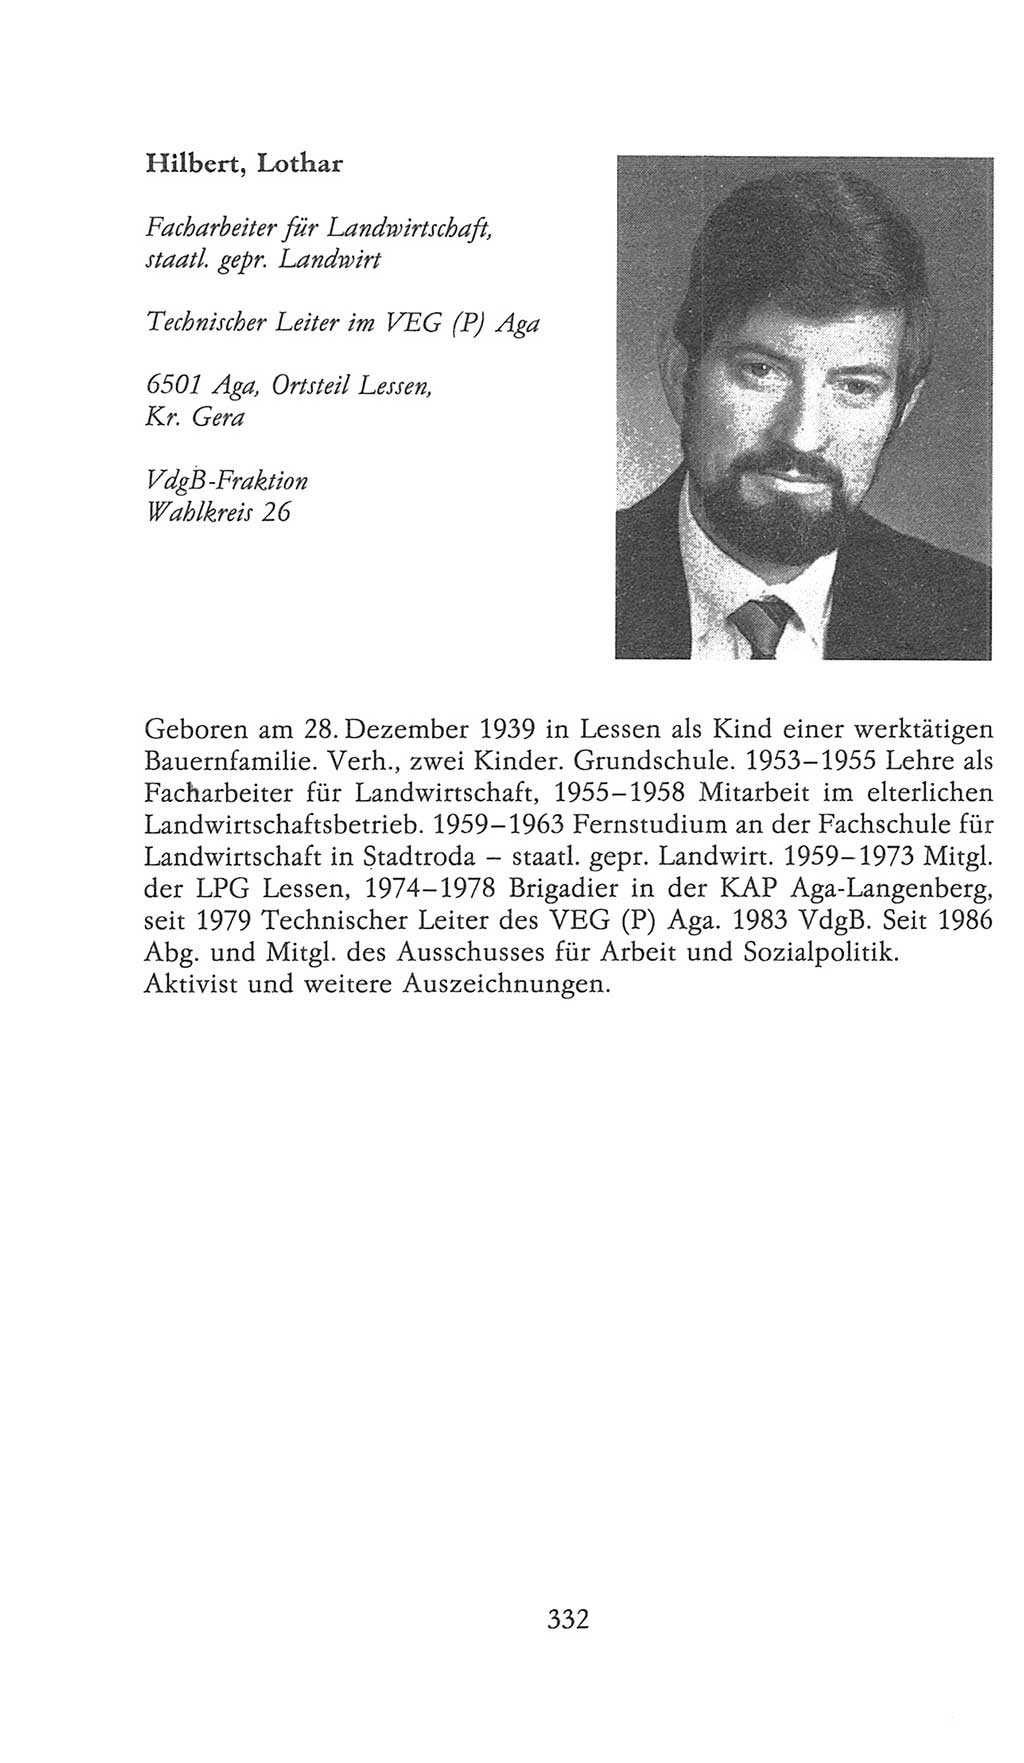 Volkskammer (VK) der Deutschen Demokratischen Republik (DDR), 9. Wahlperiode 1986-1990, Seite 332 (VK. DDR 9. WP. 1986-1990, S. 332)